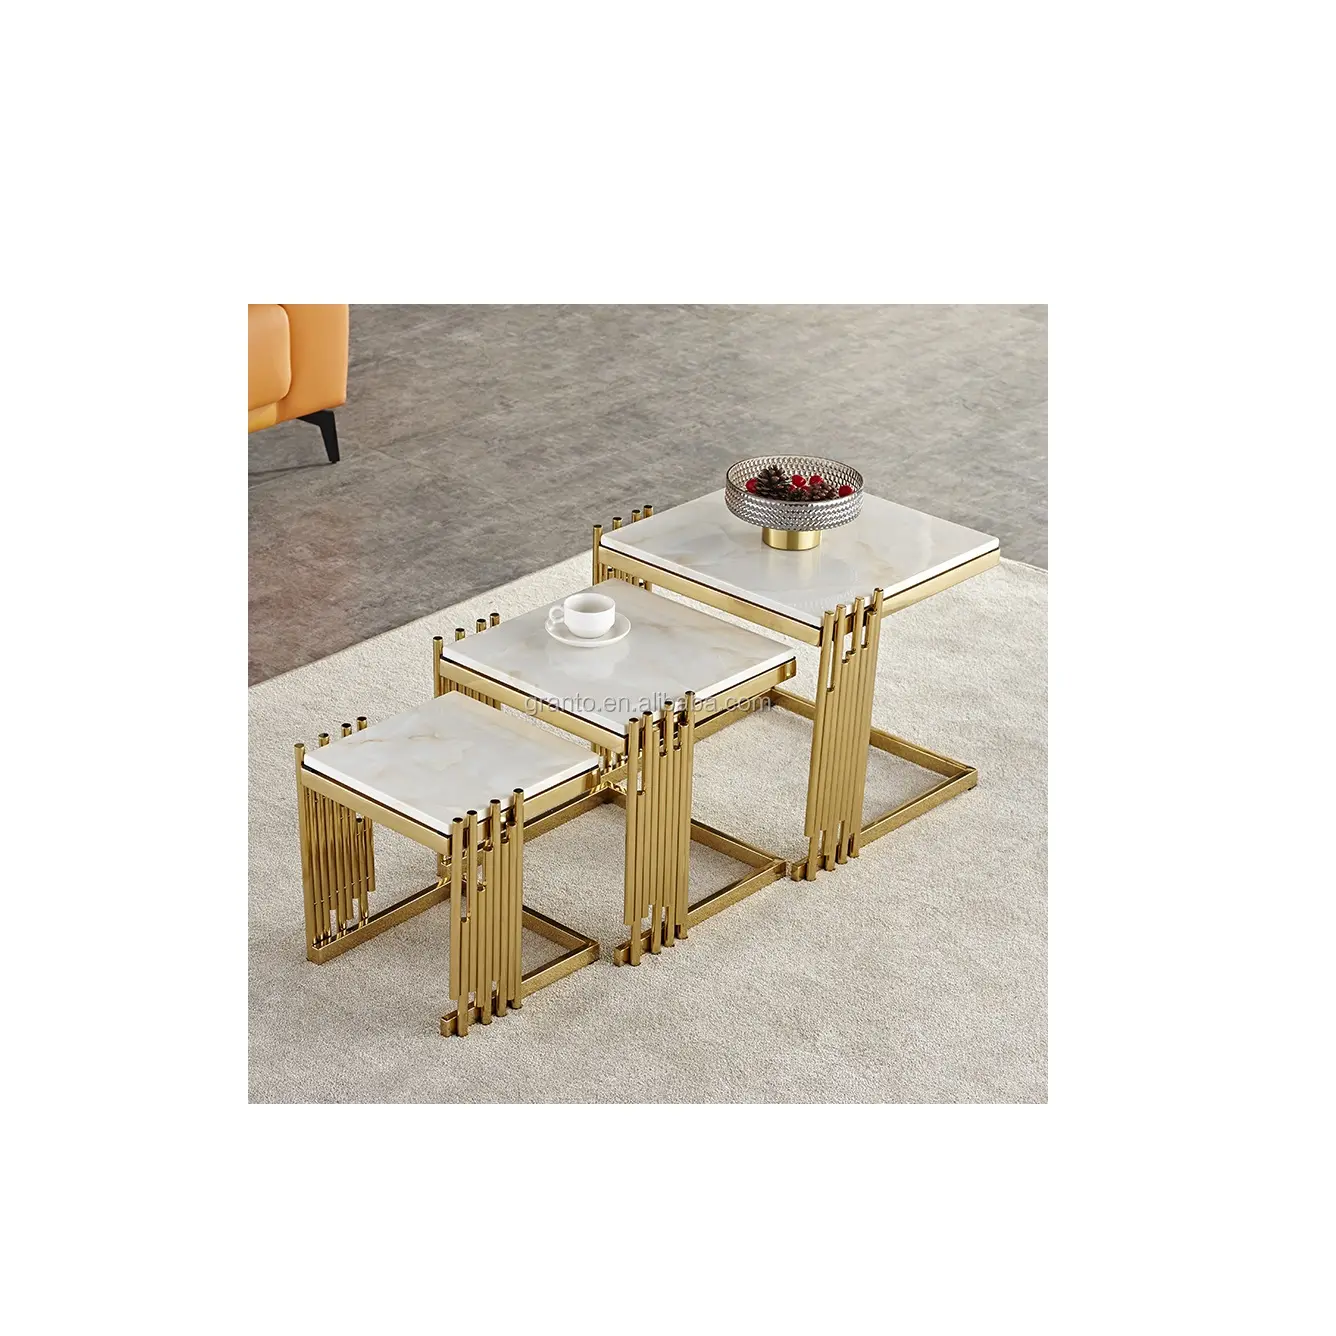 Table de luxe en acier inoxydable, meubles de maison, Design italien, dernière Table basse en verre avec tiroirs, haute qualité